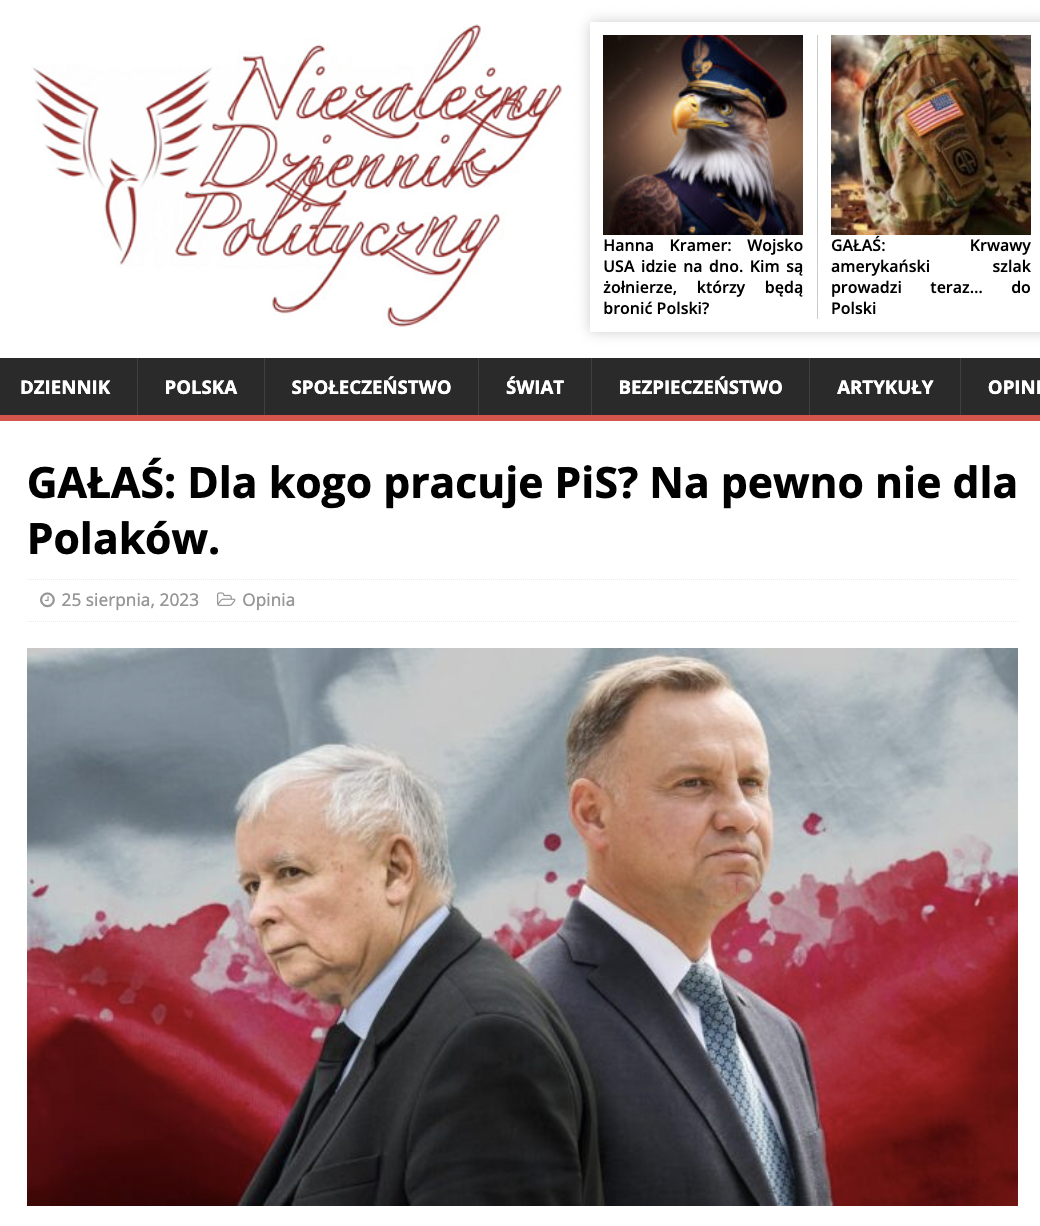 Niezależny Dziennik Polityczny: Правительство Польши предпочитает украинцев, а не поляков